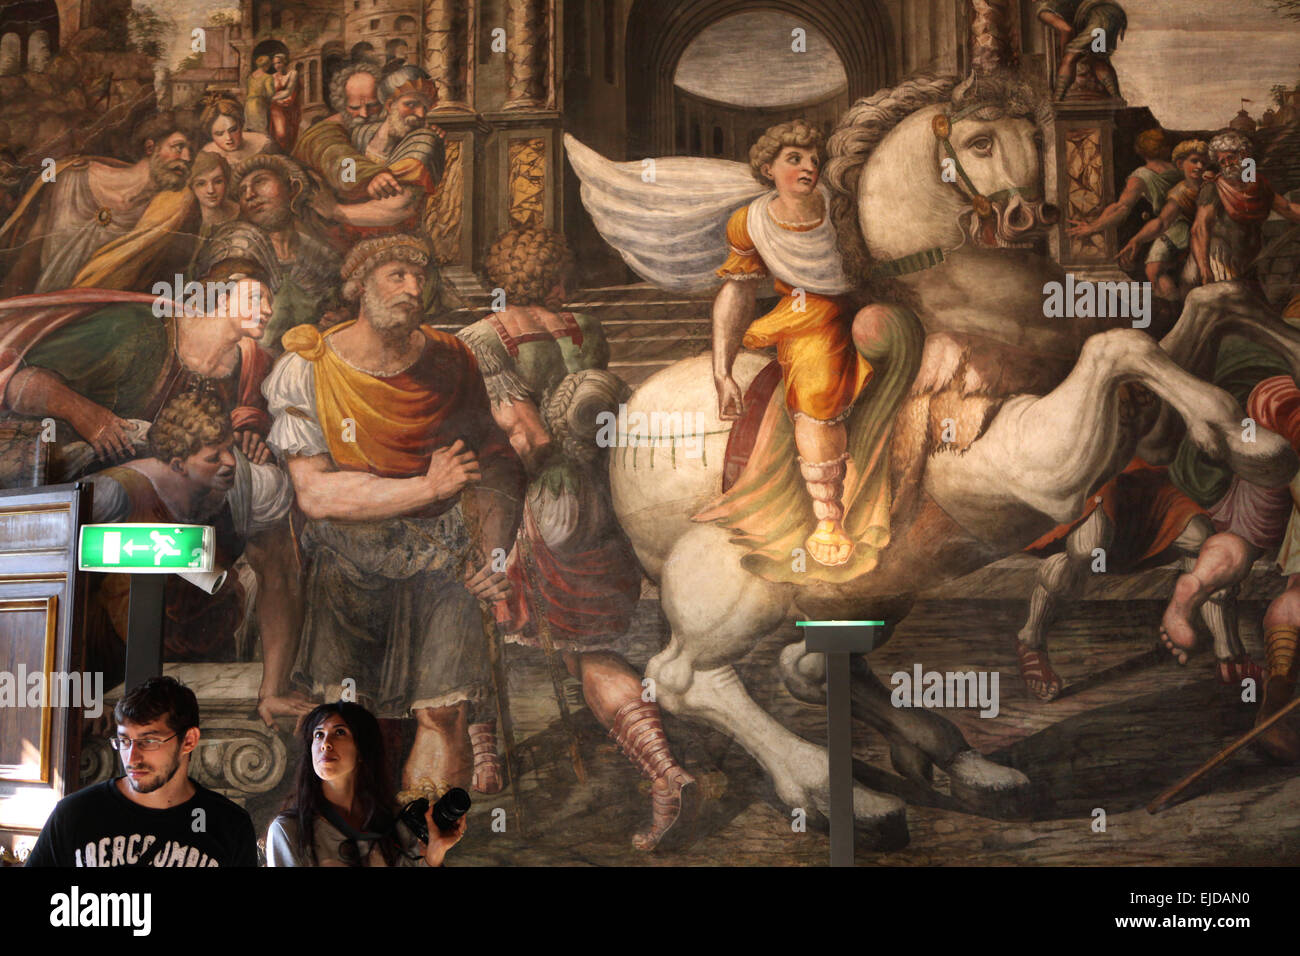 Alexander der große zähmt Bucephalus. Fresko von unbekannten Künstler Alexander Room in der Villa Farnesina in Rom, Italien. Stockfoto